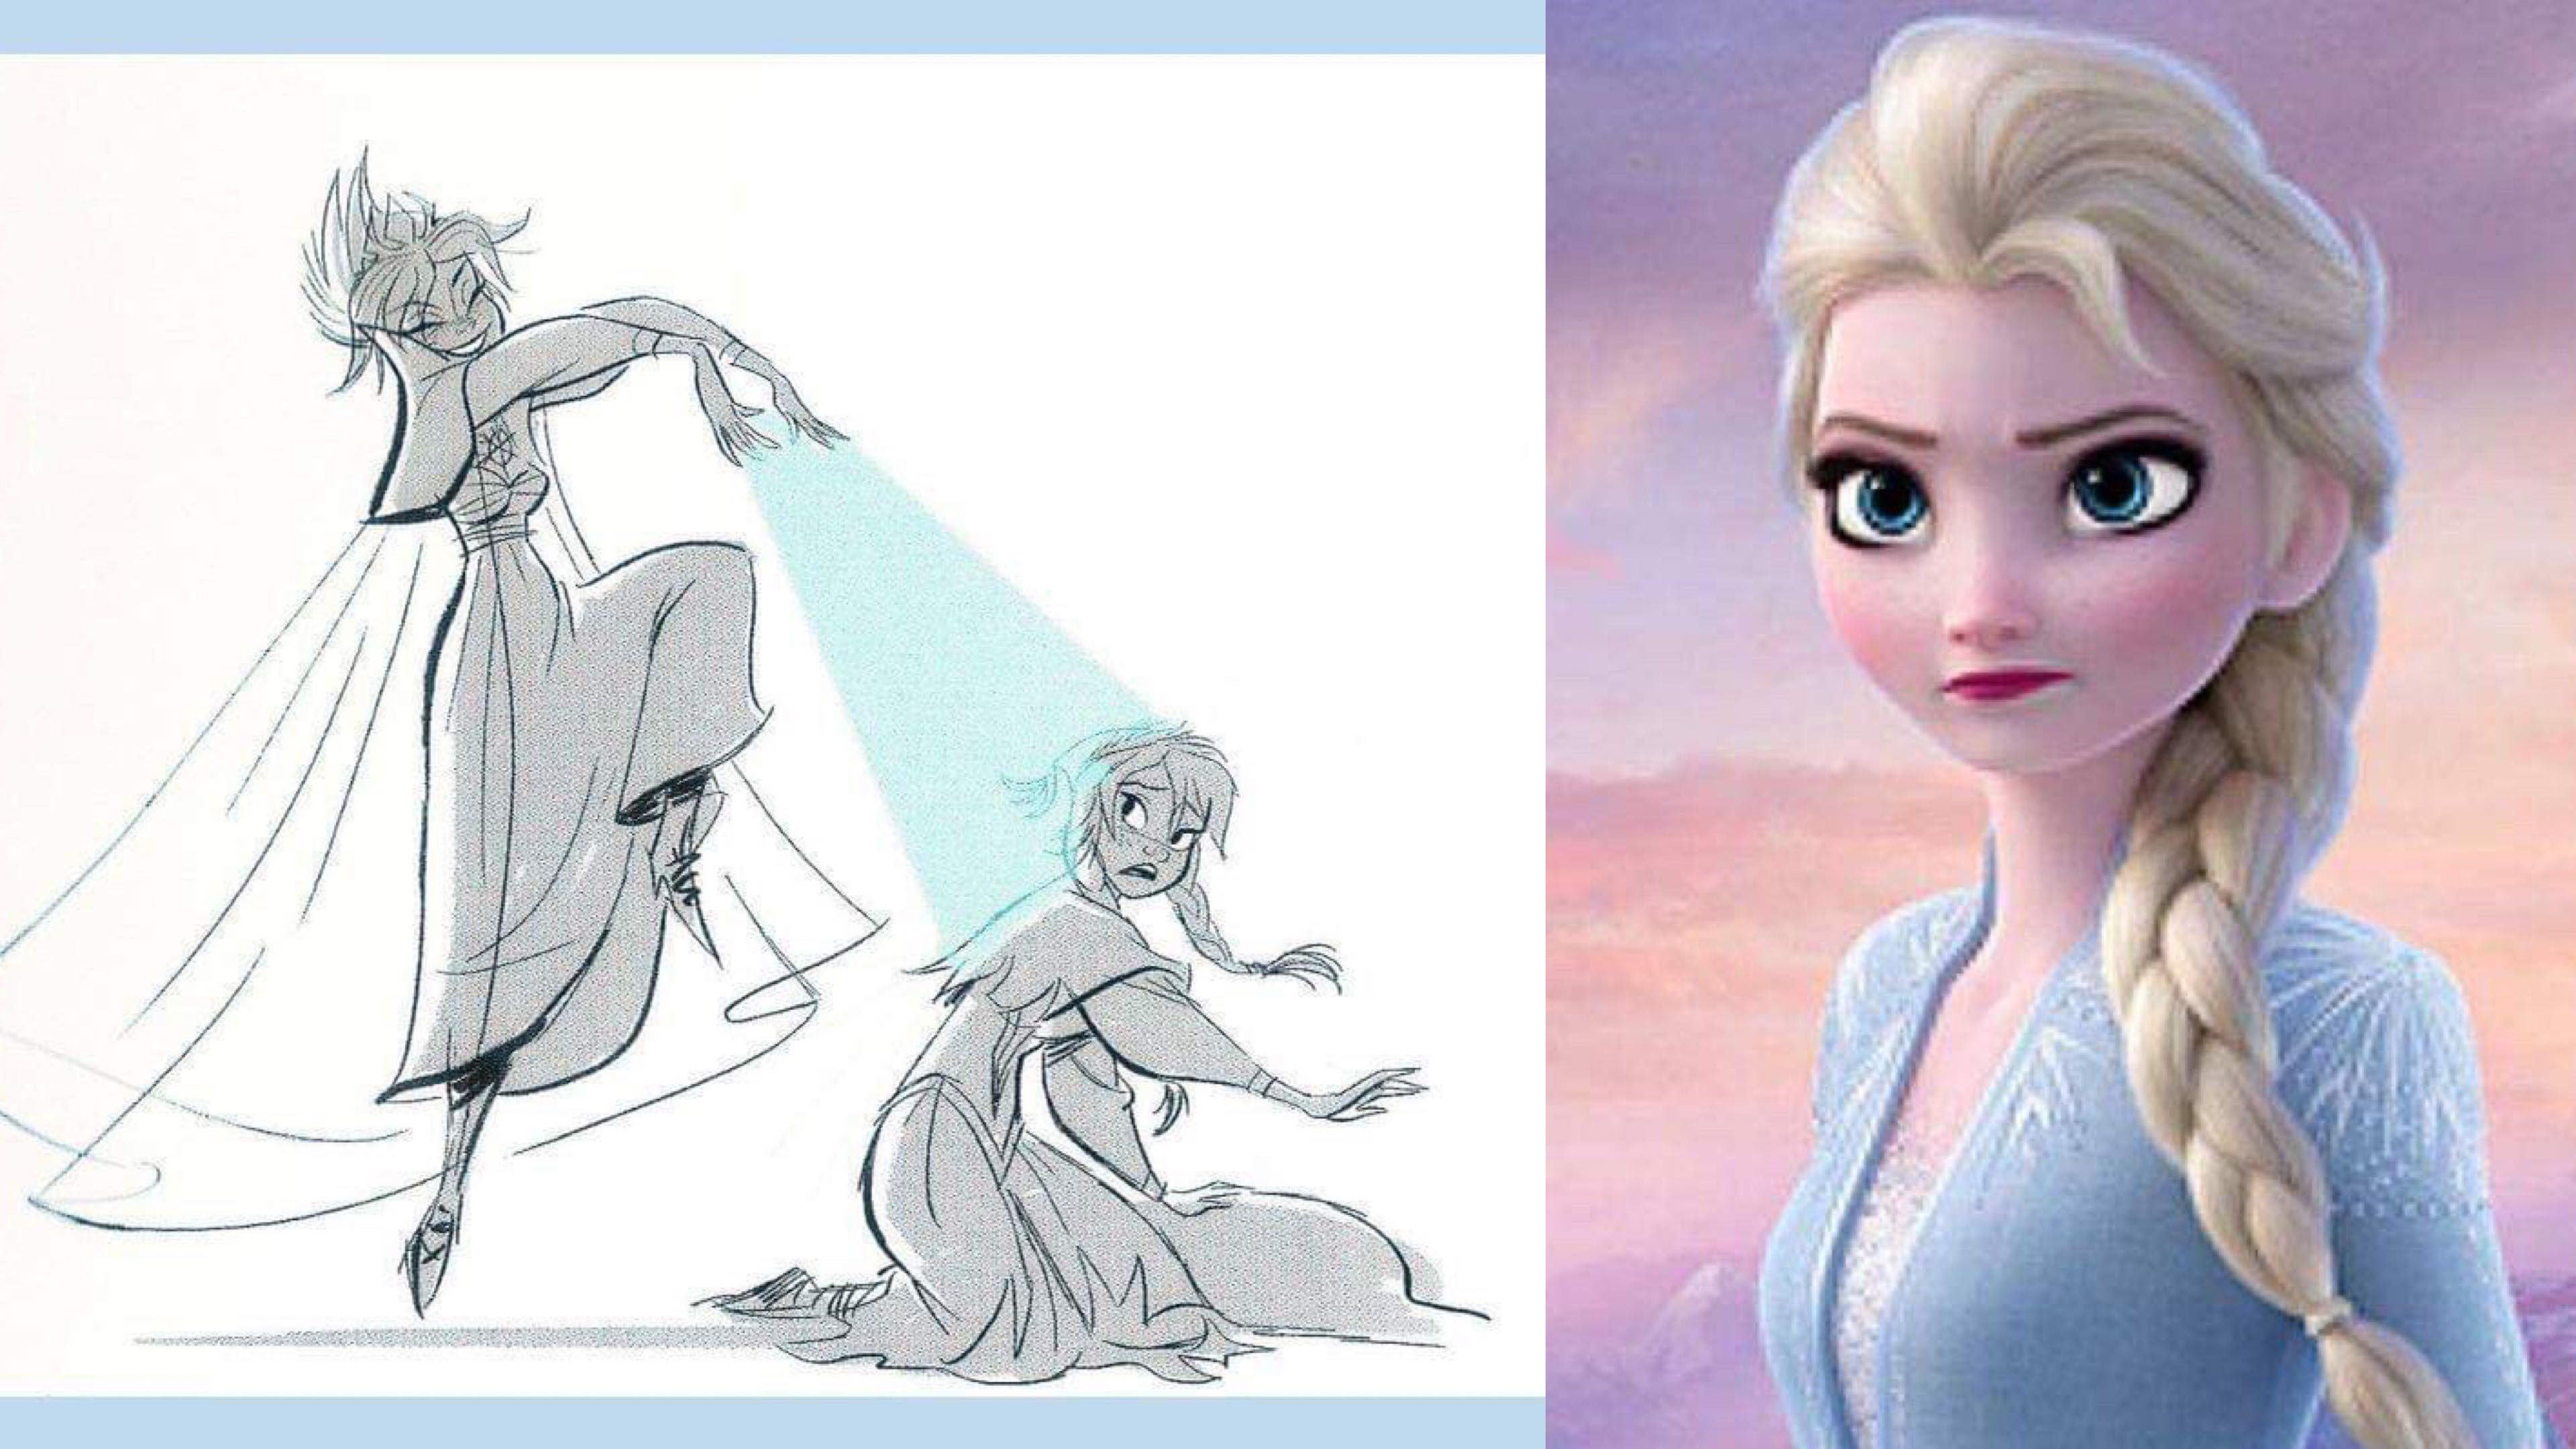 「《冰雪奇緣2》Elsa 最初設定竟然是大反派！」導演首度揭秘，將反派打造成 Elsa 女王的過程… – 我們用電影寫日記